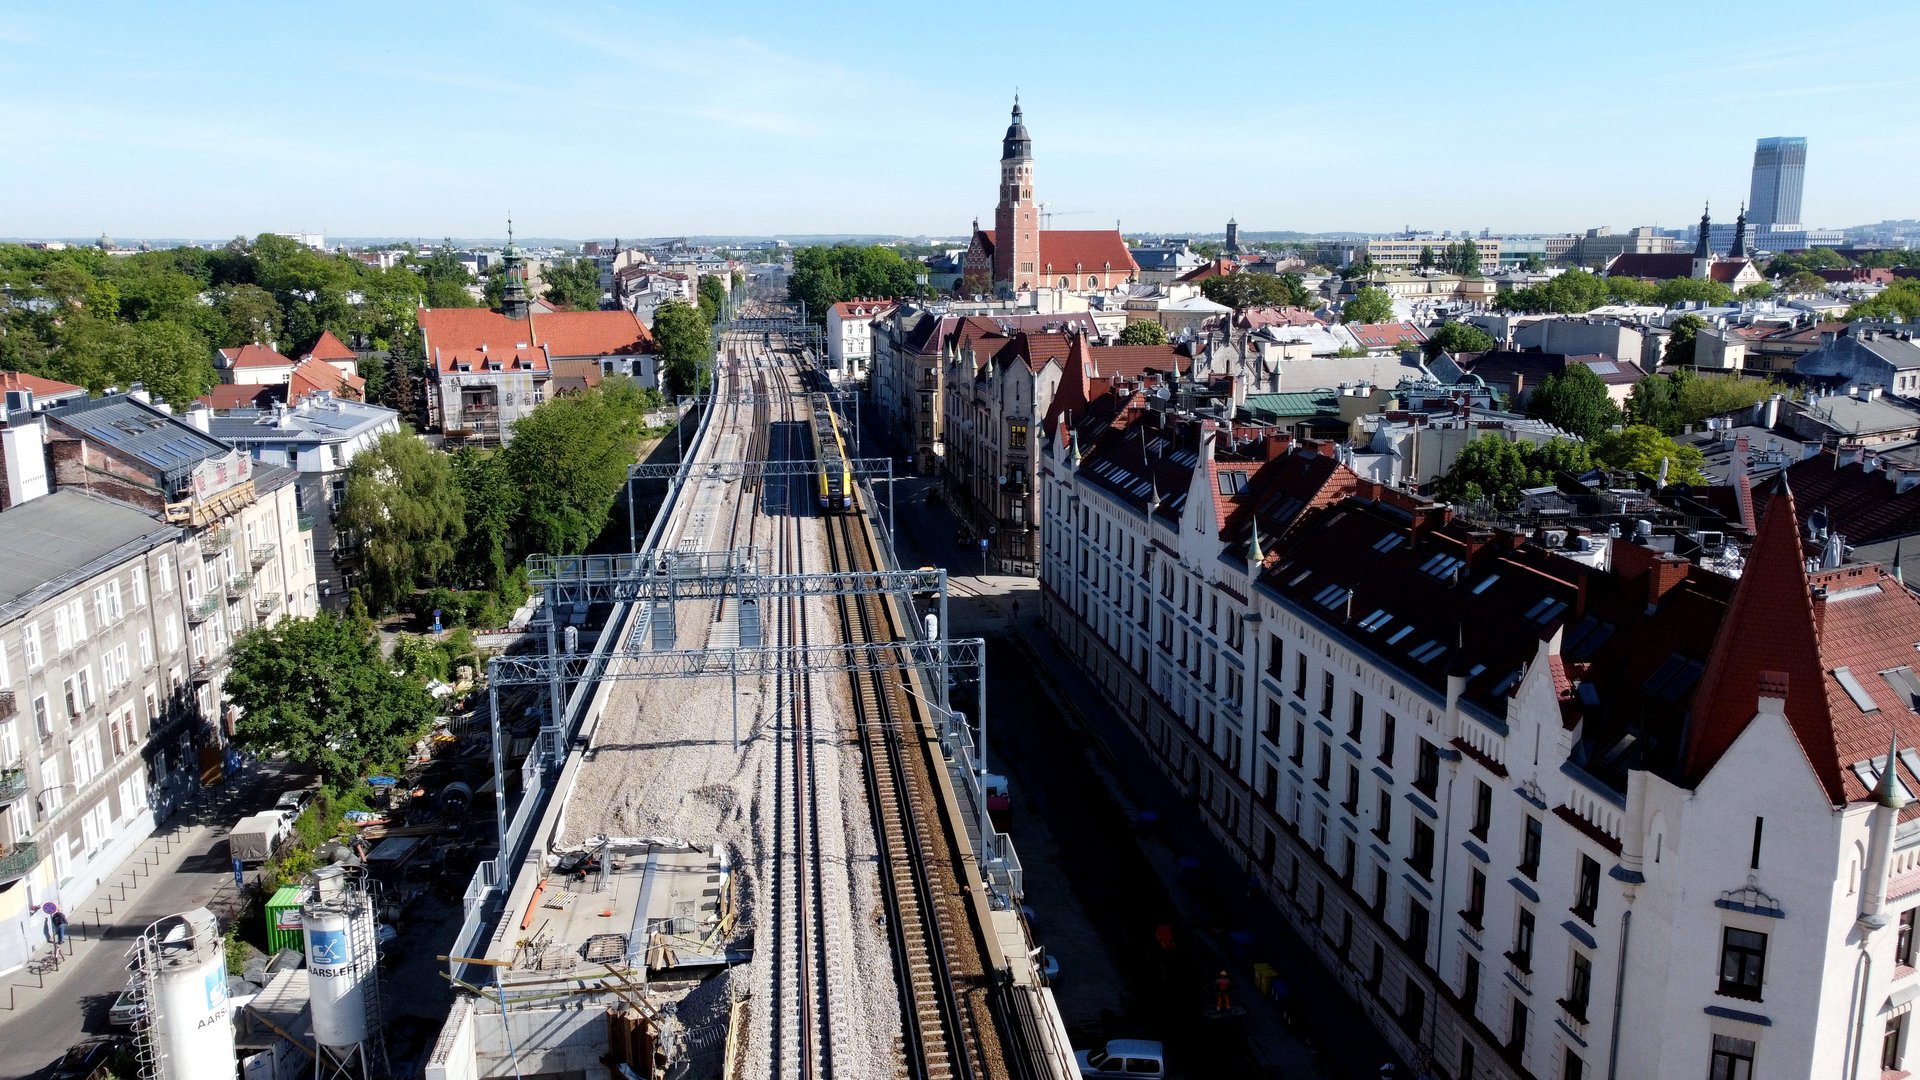 Galeria zdjęć przedstawia końcowe prace na drugim torze w Krakowie. Widoczne są pociągi sieciowe, podbijarki na stacjach i przystankach oraz pociągi na nowym moście oraz wiaduktach.